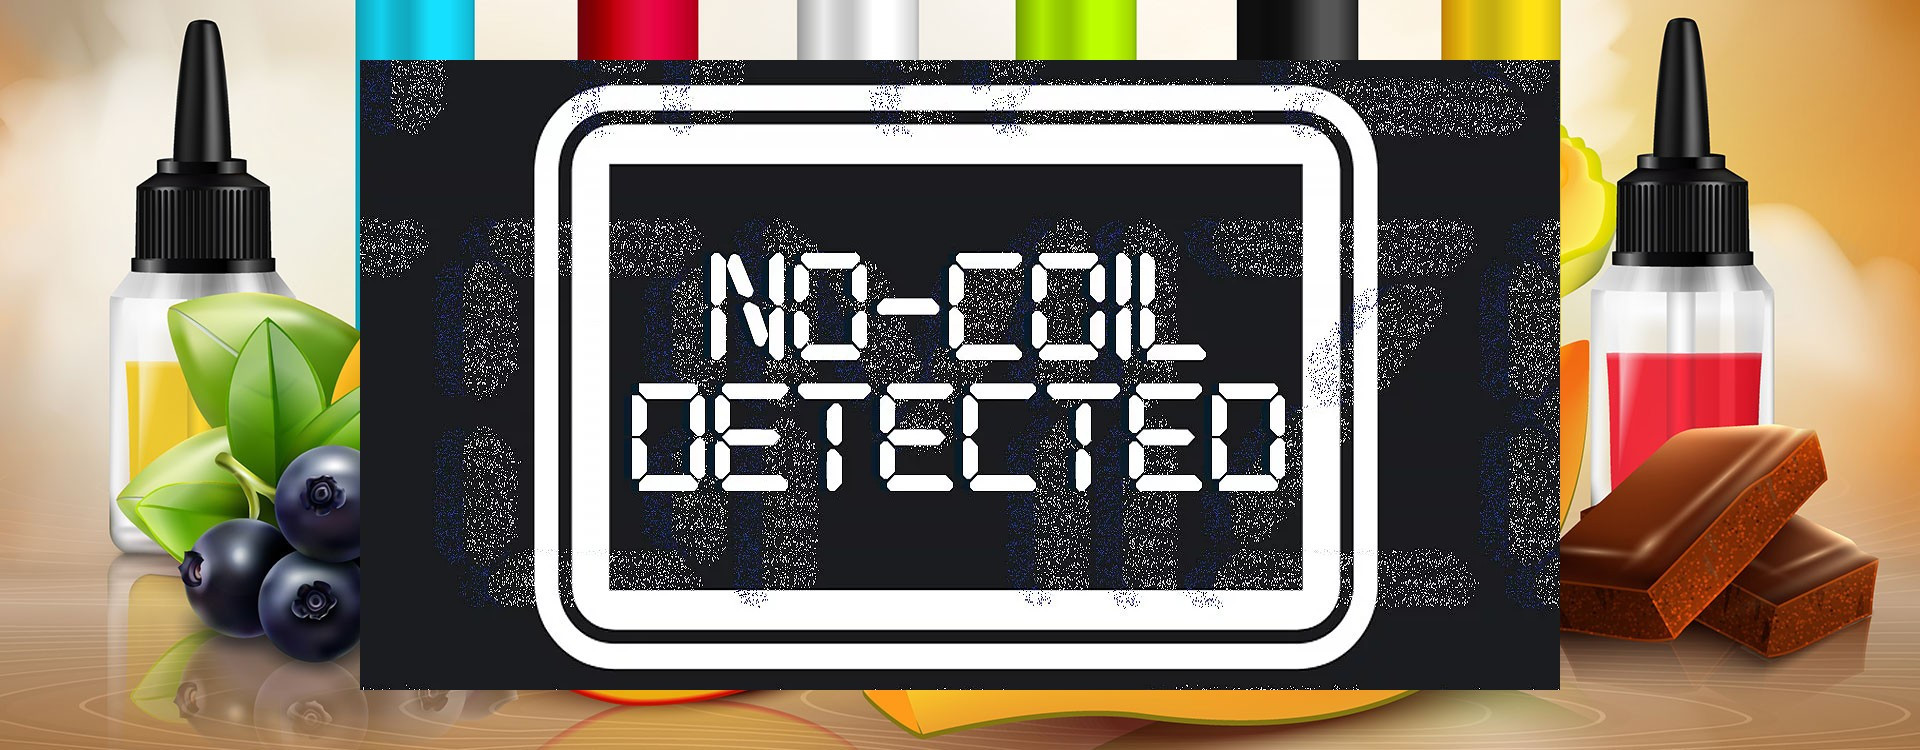 Comment résoudre le problème "No Coil Detected" sur votre cigarette électronique